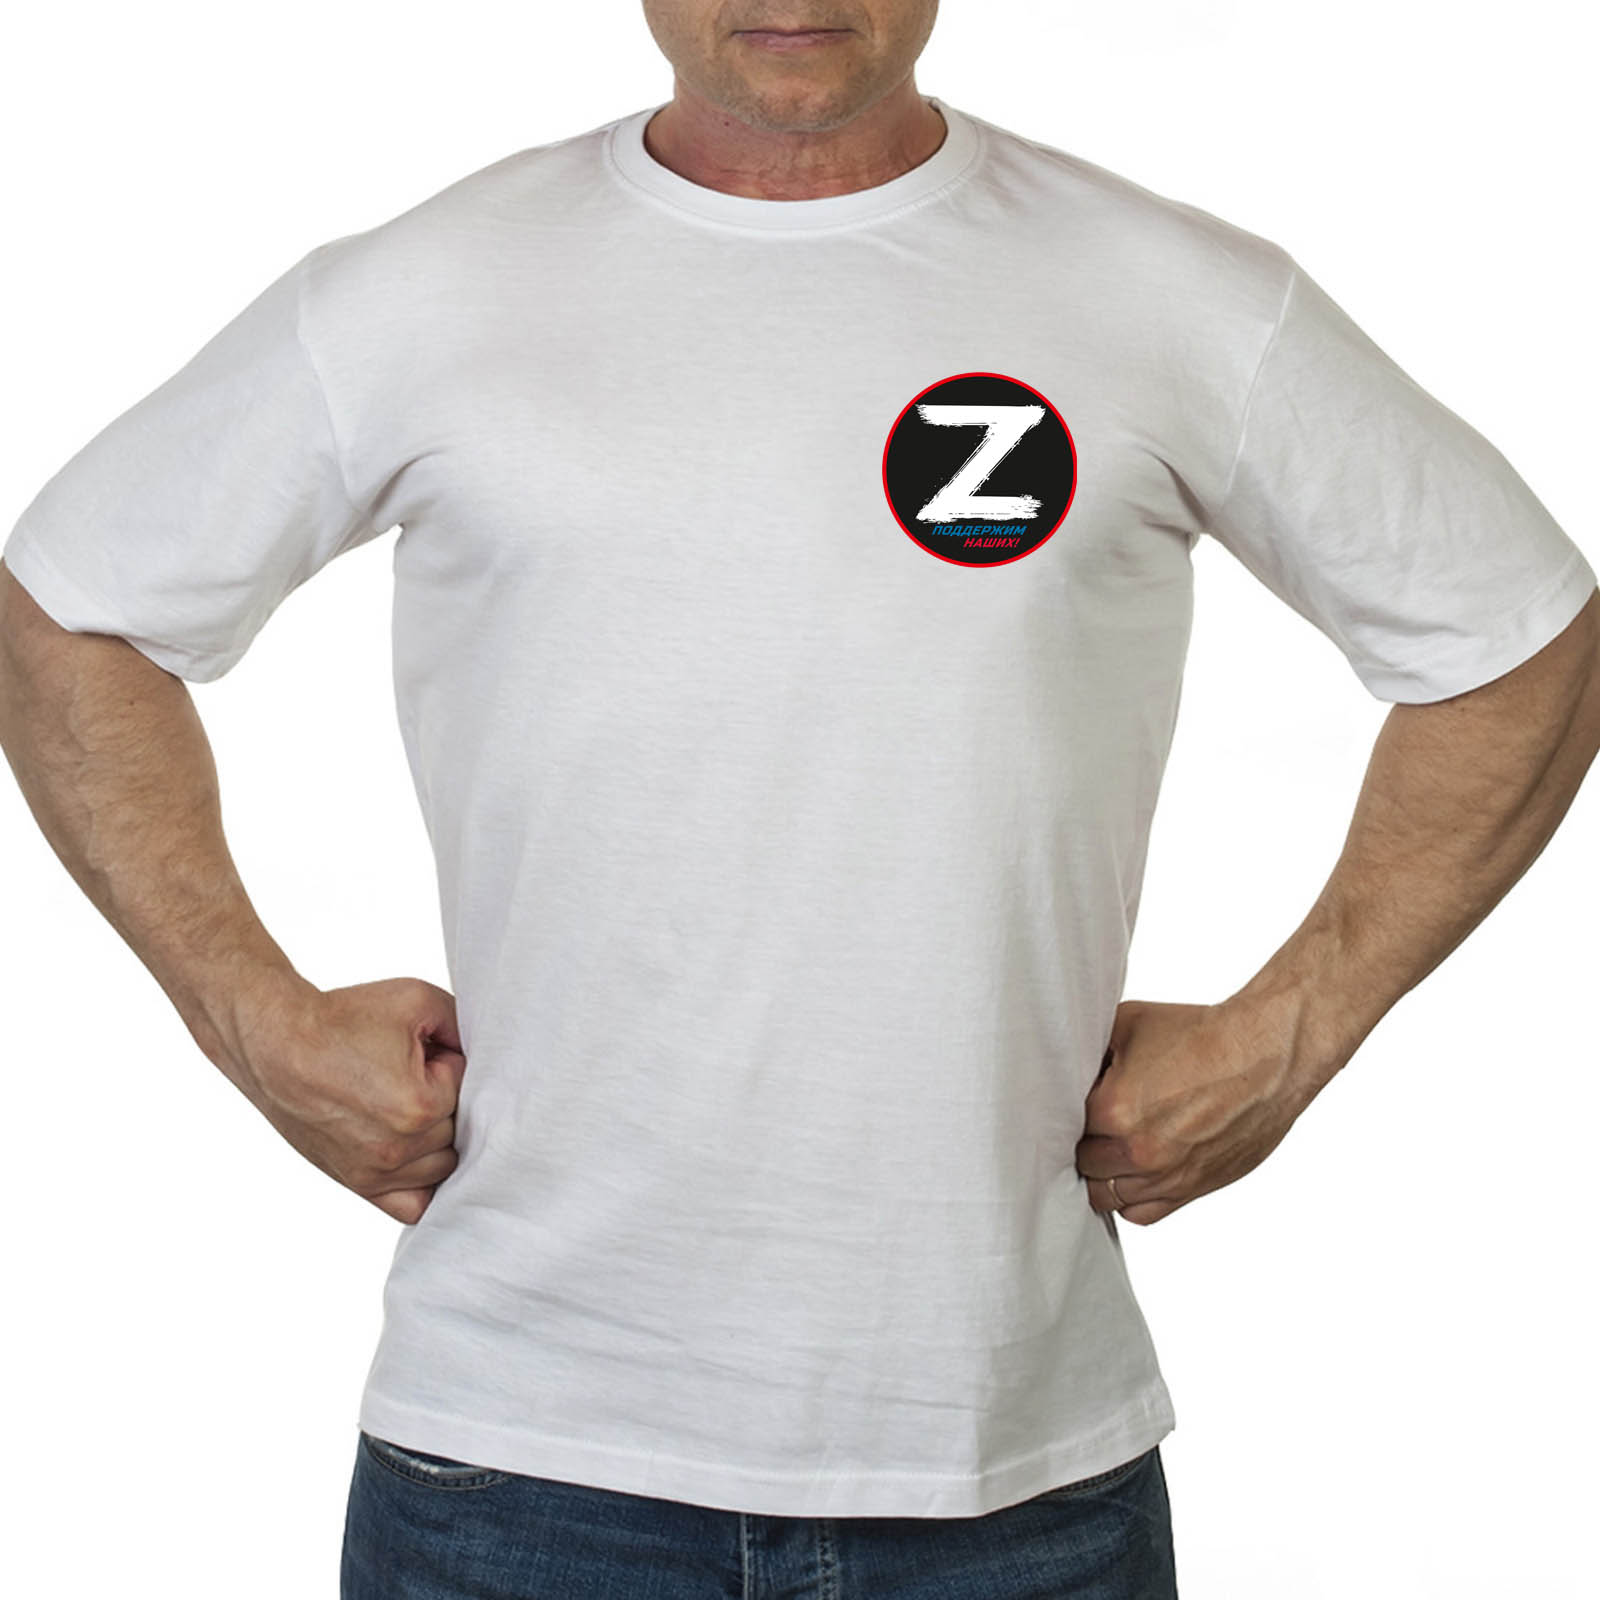 Купить в интернет магазине футболку Операция Z